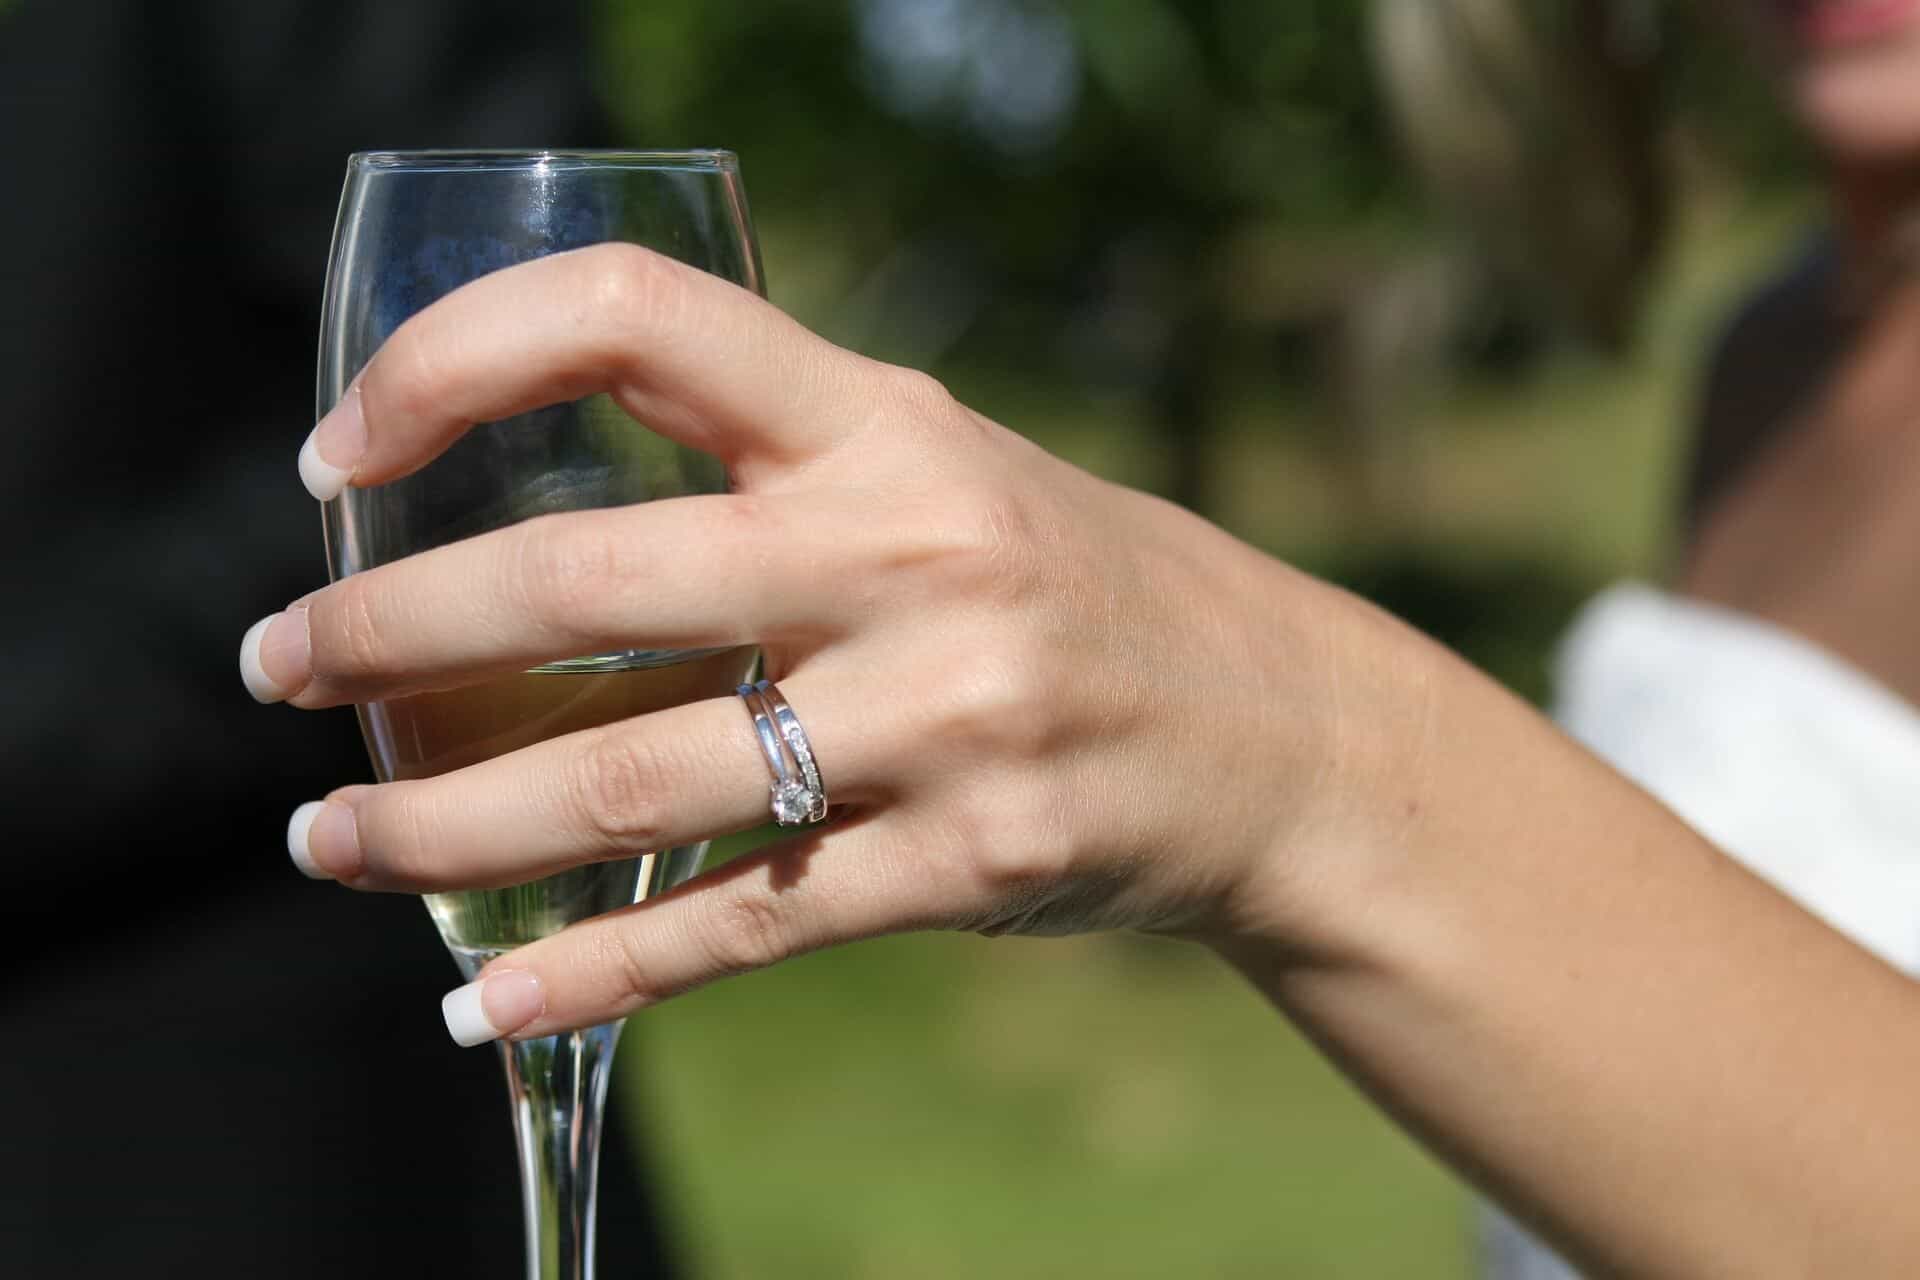 Married Af Svg, Engaged AF Svg, Wedding Ring Finger Svg. Vector Cut File  for Cricut, Silhouette, Pdf Png Eps Dxf, Decal, Sticker, Vinyl, Pin - Etsy